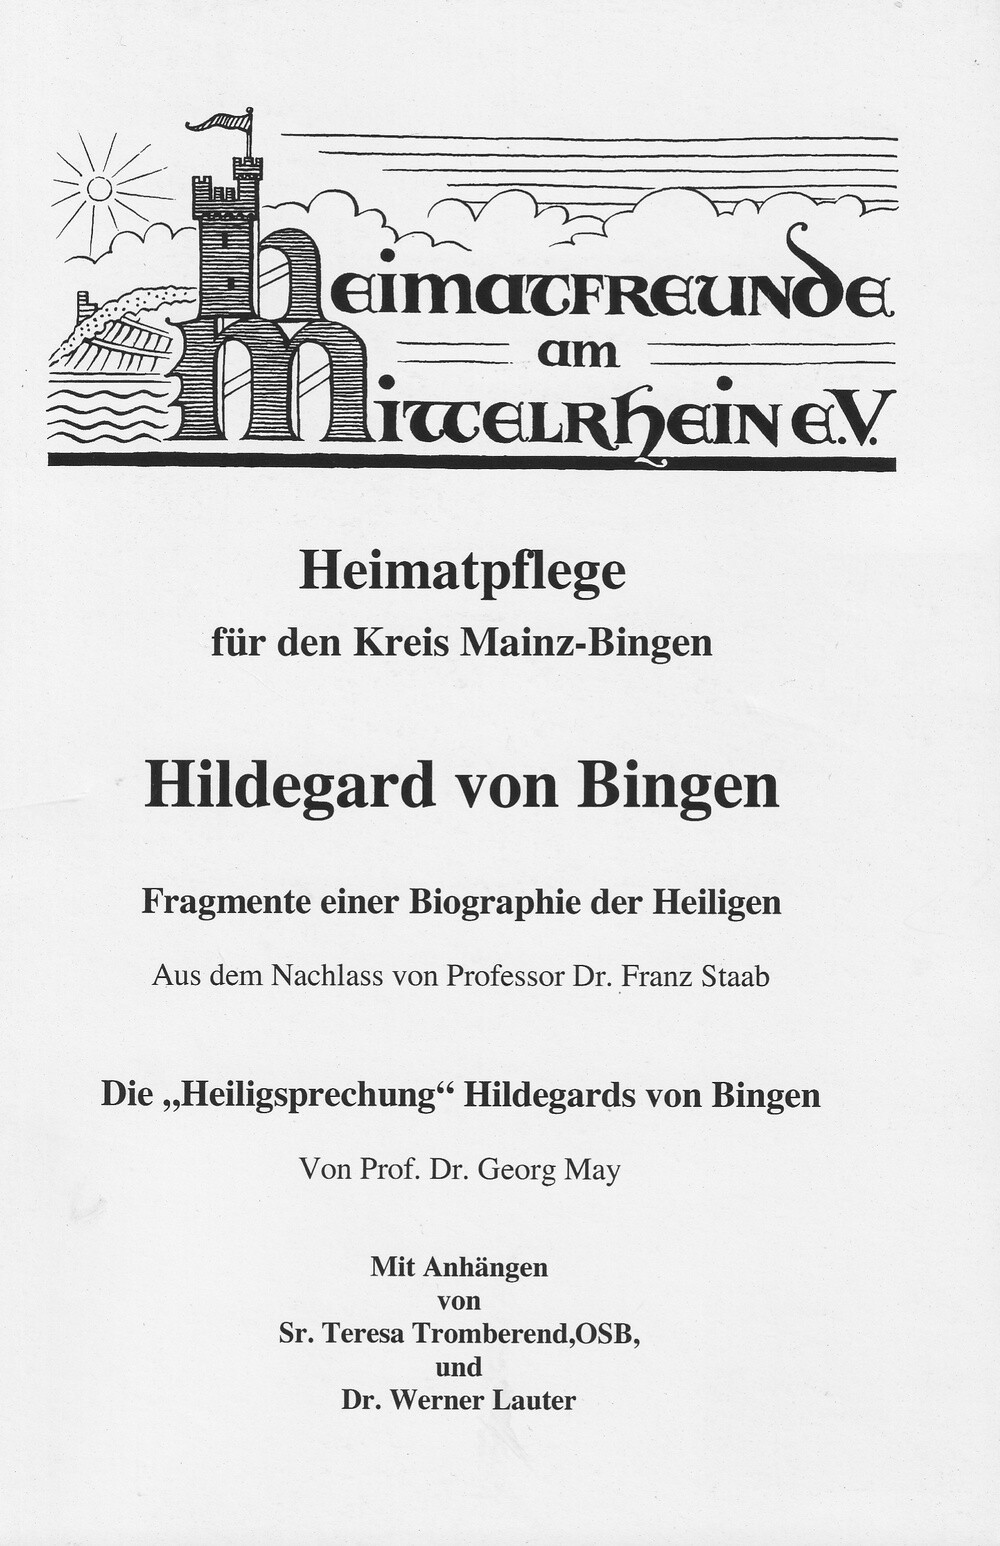 Hildegard von Bingen (Kulturverein Guntersblum CC BY-NC-SA)